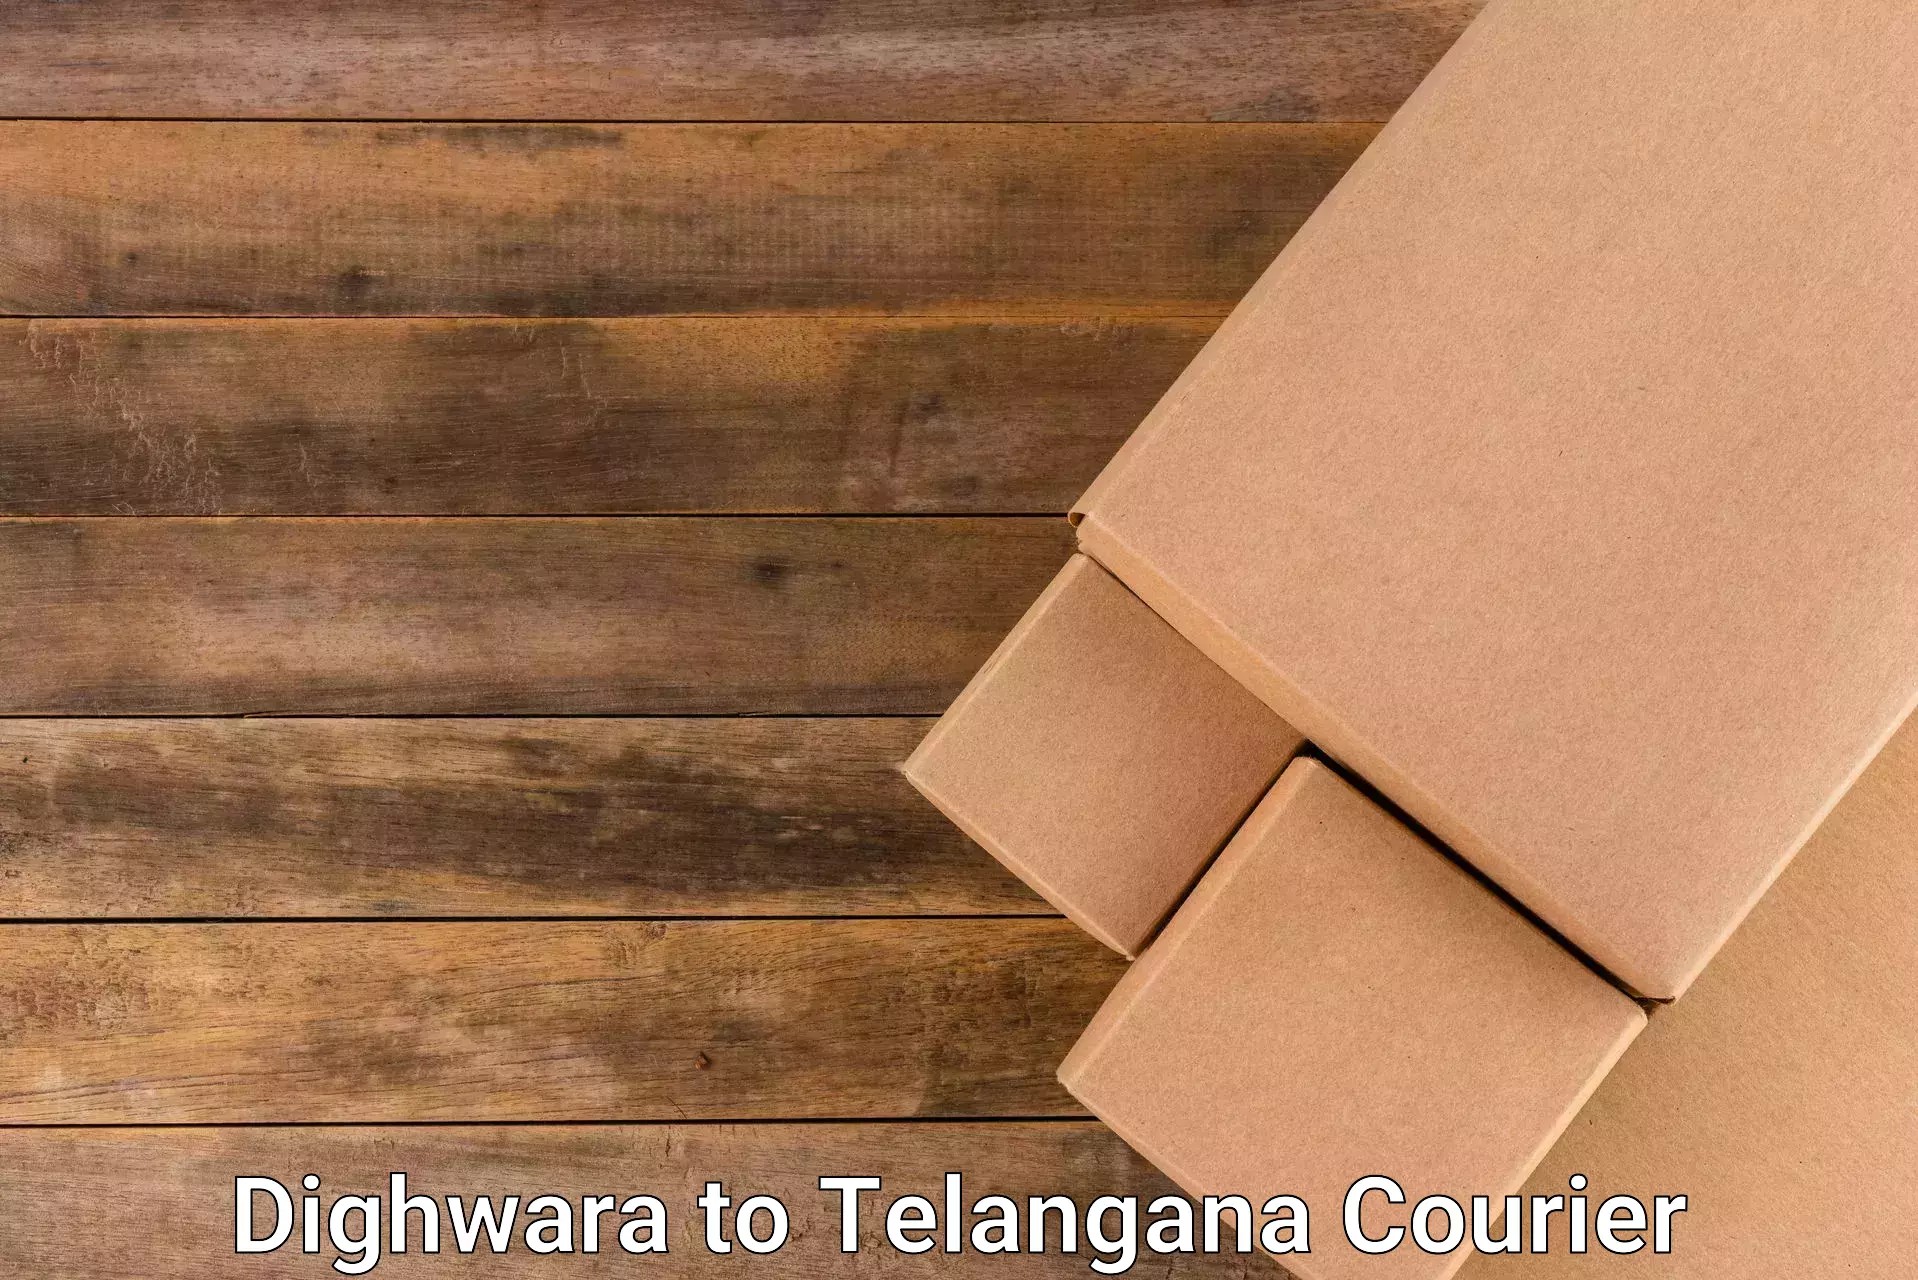 Cargo delivery service Dighwara to Wanaparthy